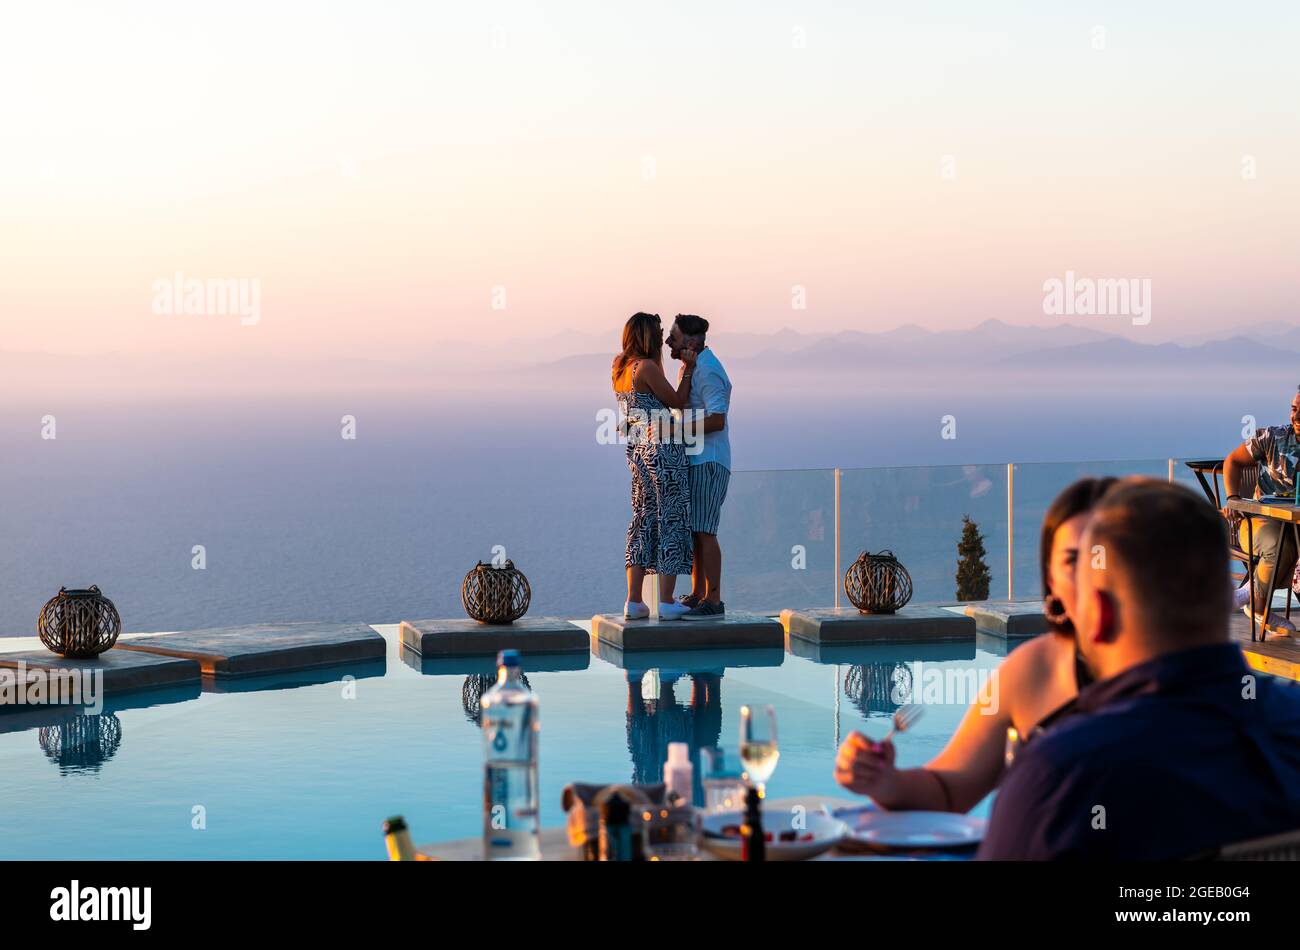 Insel Lefkada. Griechenland - 08.07.2021: Ein junges Paar, das Romantik und feines Essen am Pool mit fantastischem Meerblick genießt. Stockfoto